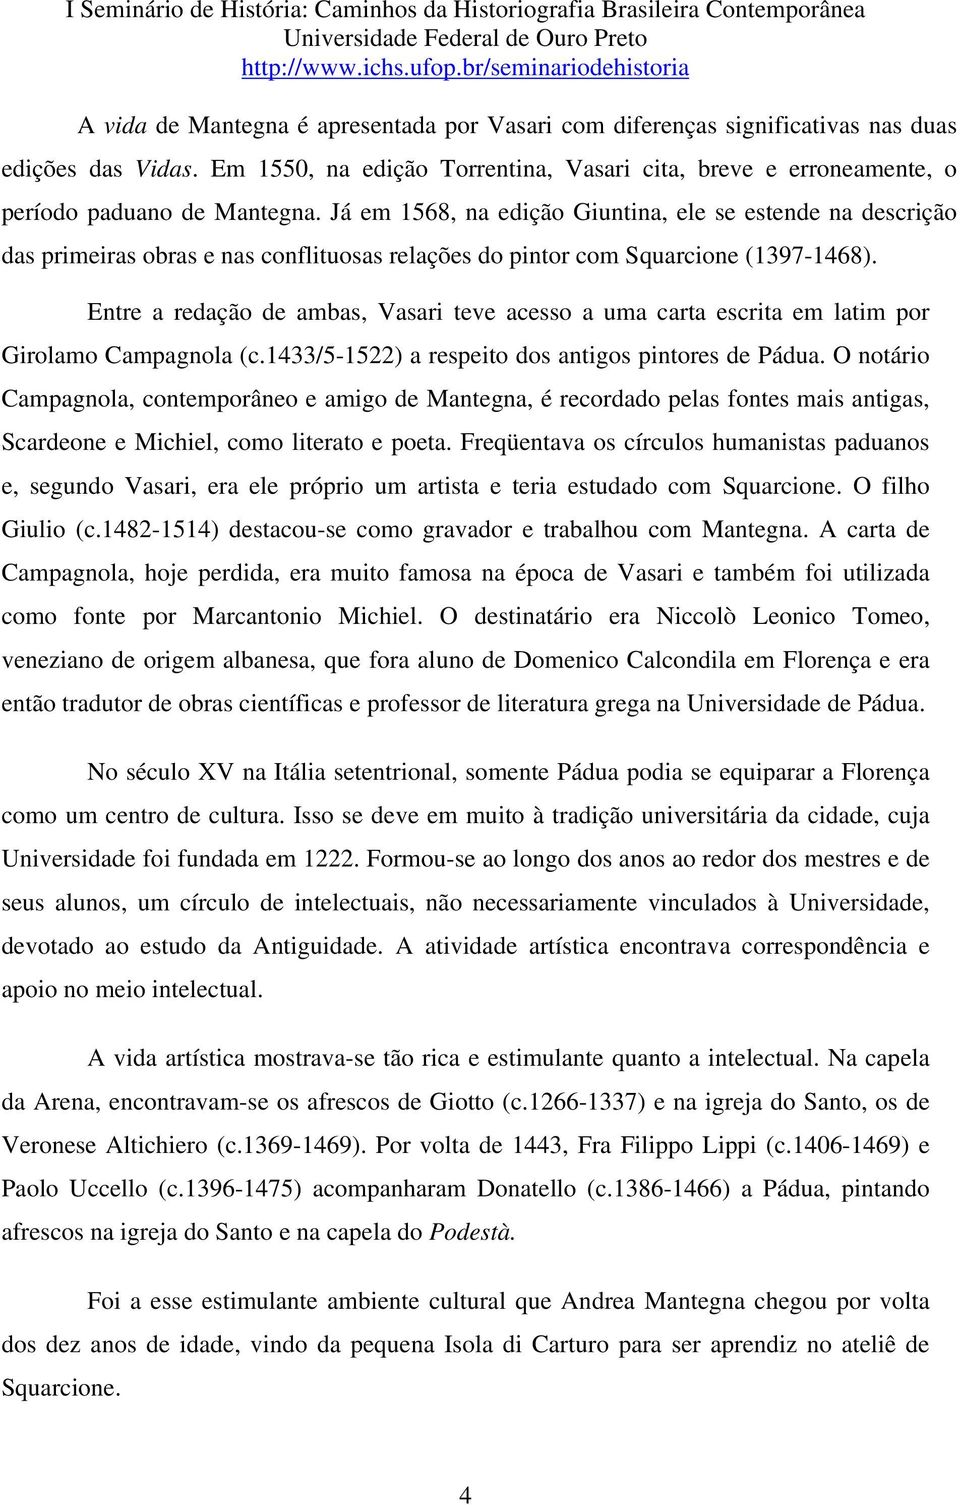 Entre a redação de ambas, Vasari teve acesso a uma carta escrita em latim por Girolamo Campagnola (c.1433/5-1522) a respeito dos antigos pintores de Pádua.